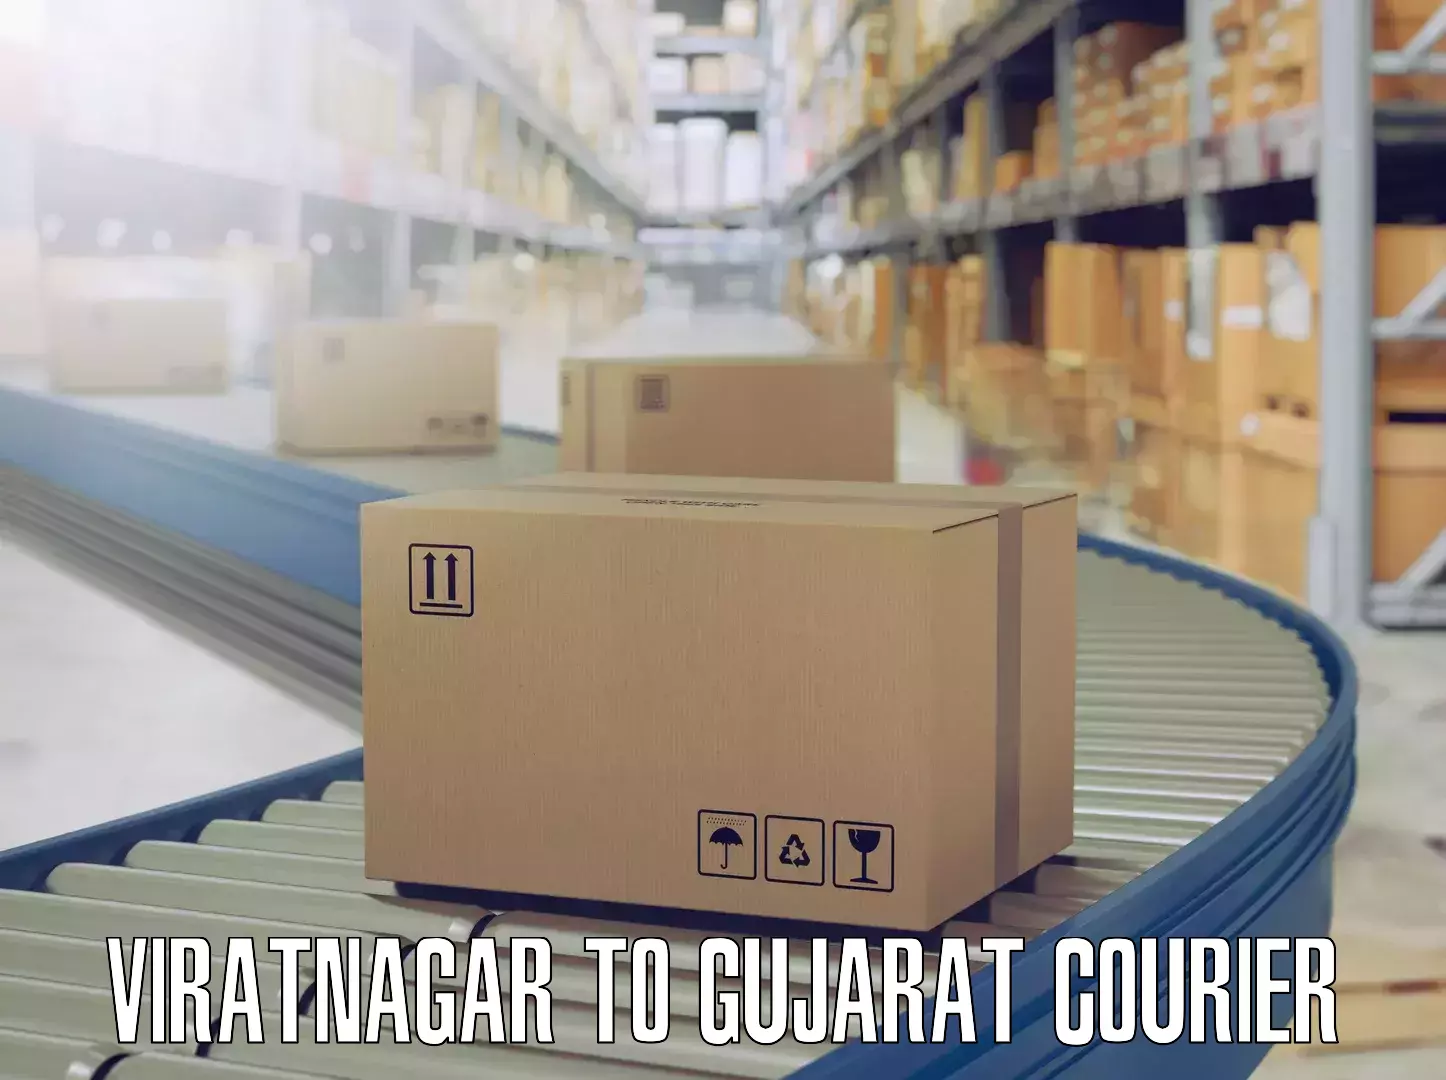 Moving and packing experts Viratnagar to Godhra